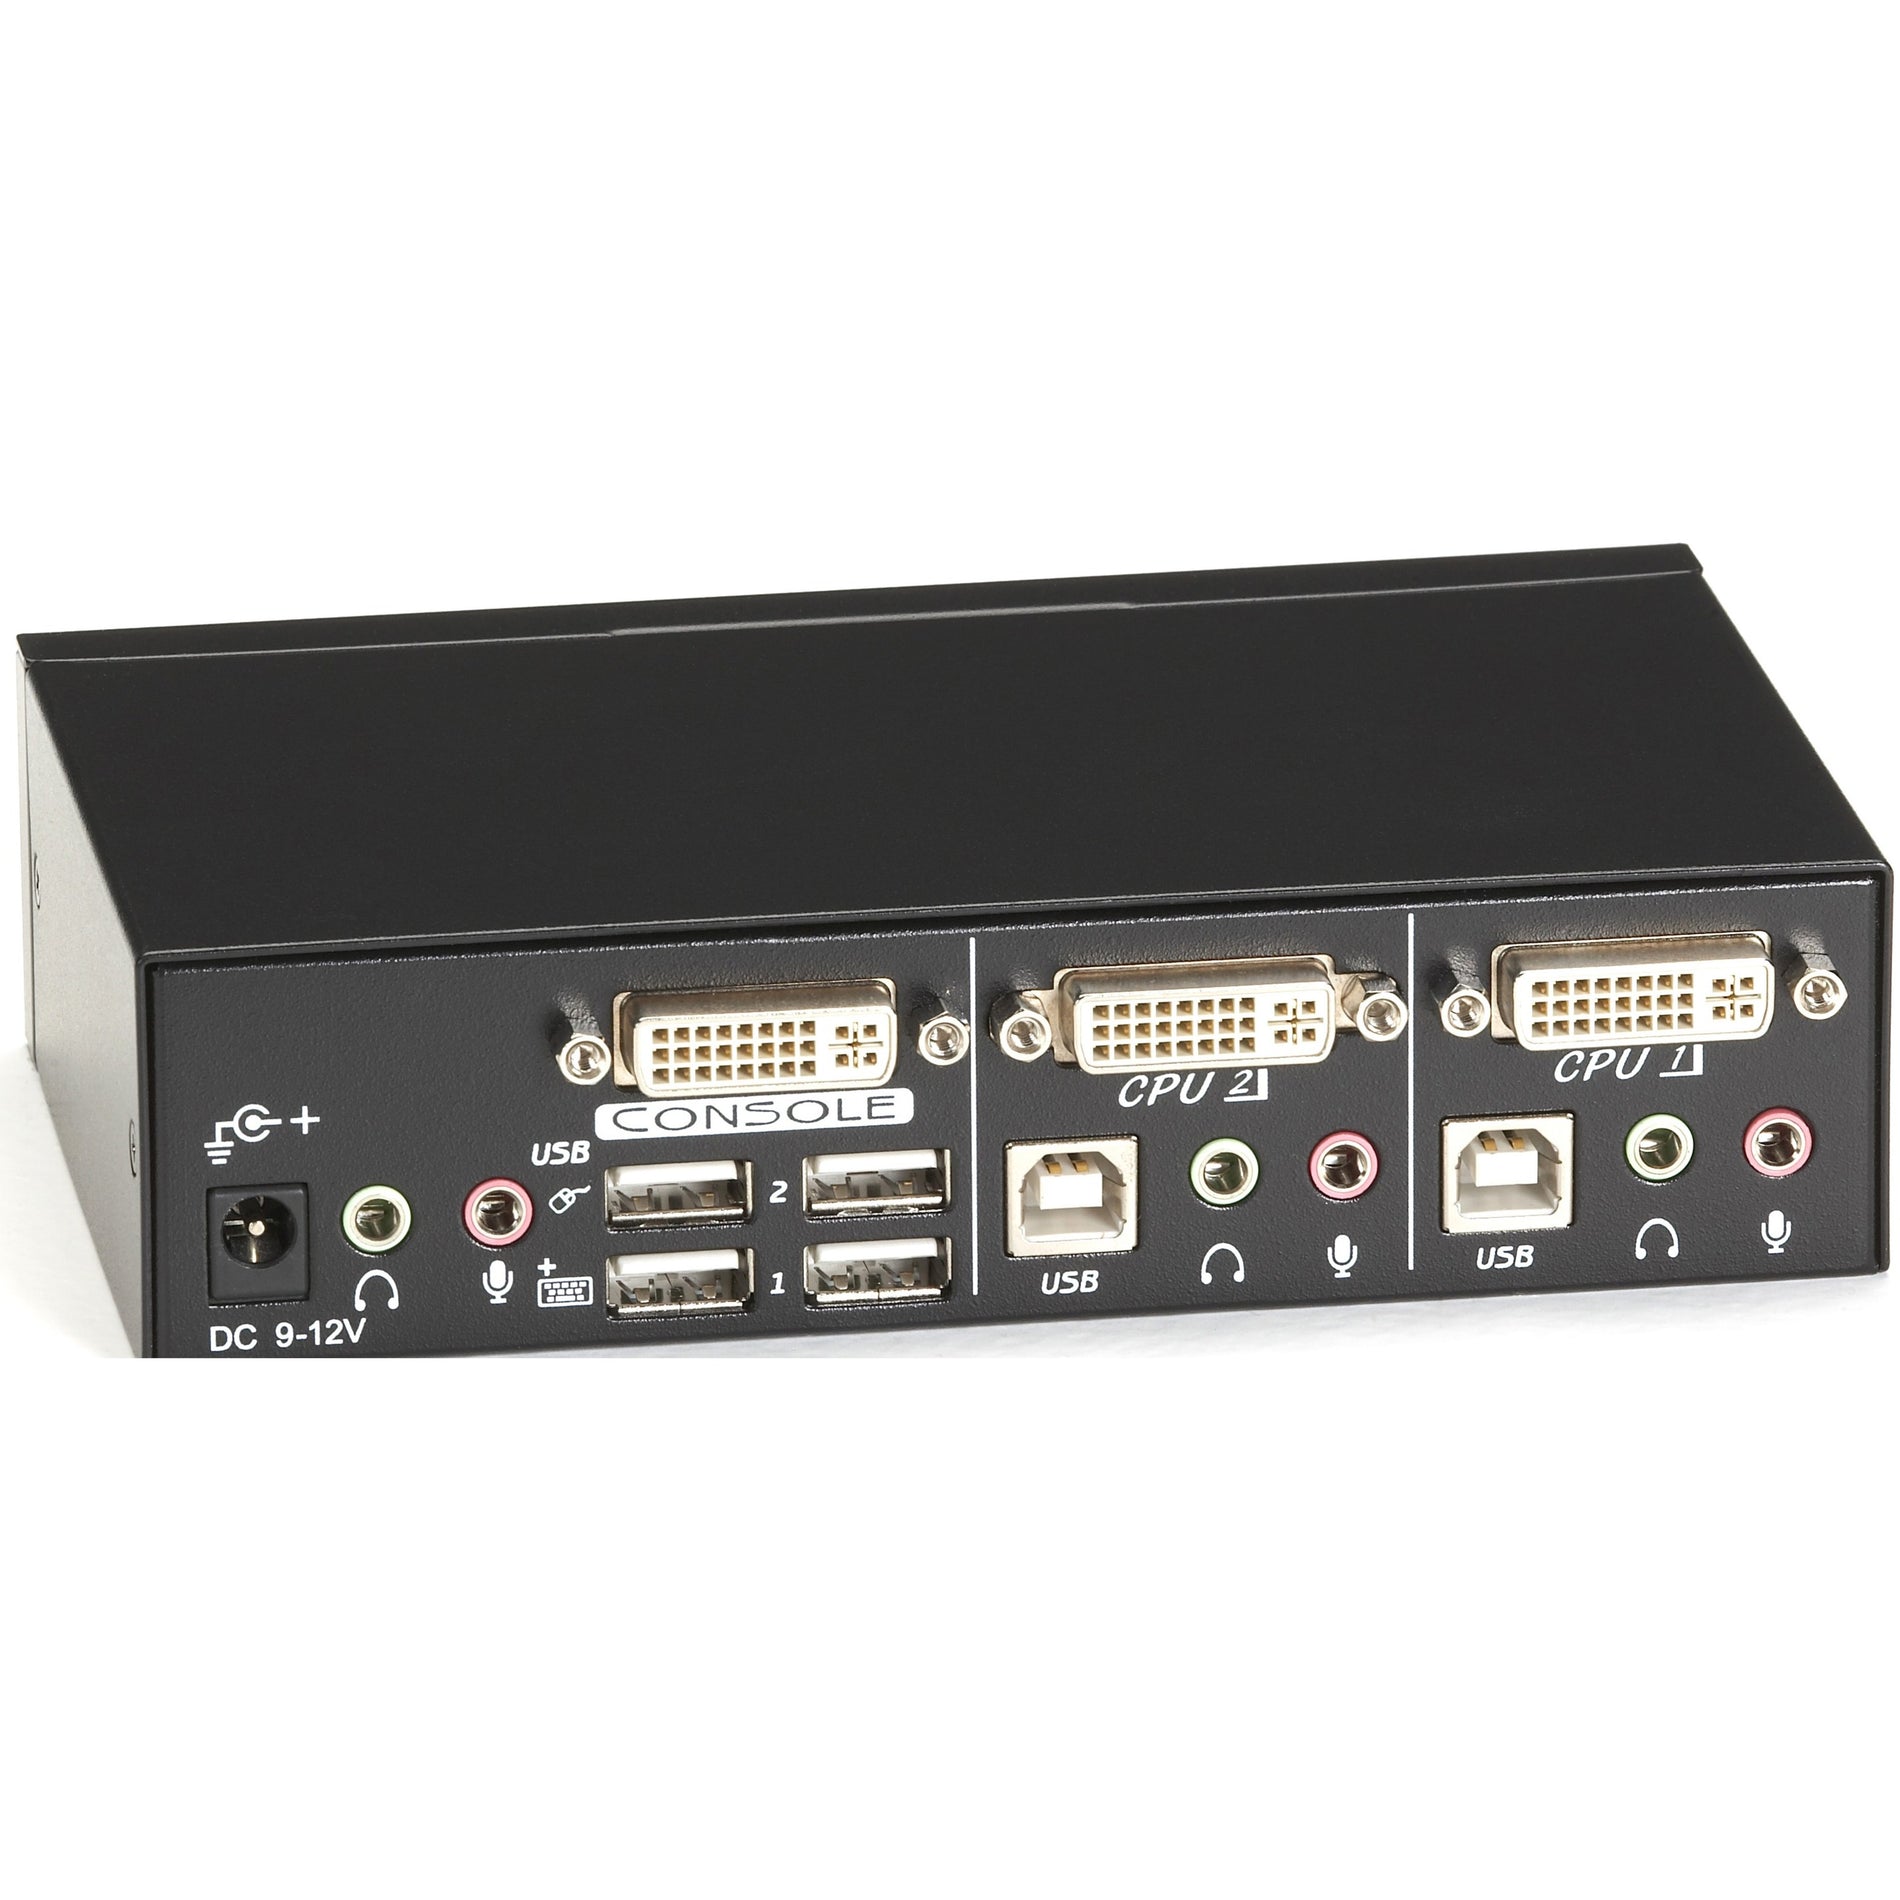 Box nero KV9612A ServSwitch DT DVI 2-Port con tastiera/mouse USB emulati WUXGA 1920 x 1200 garanzia di 1 anno